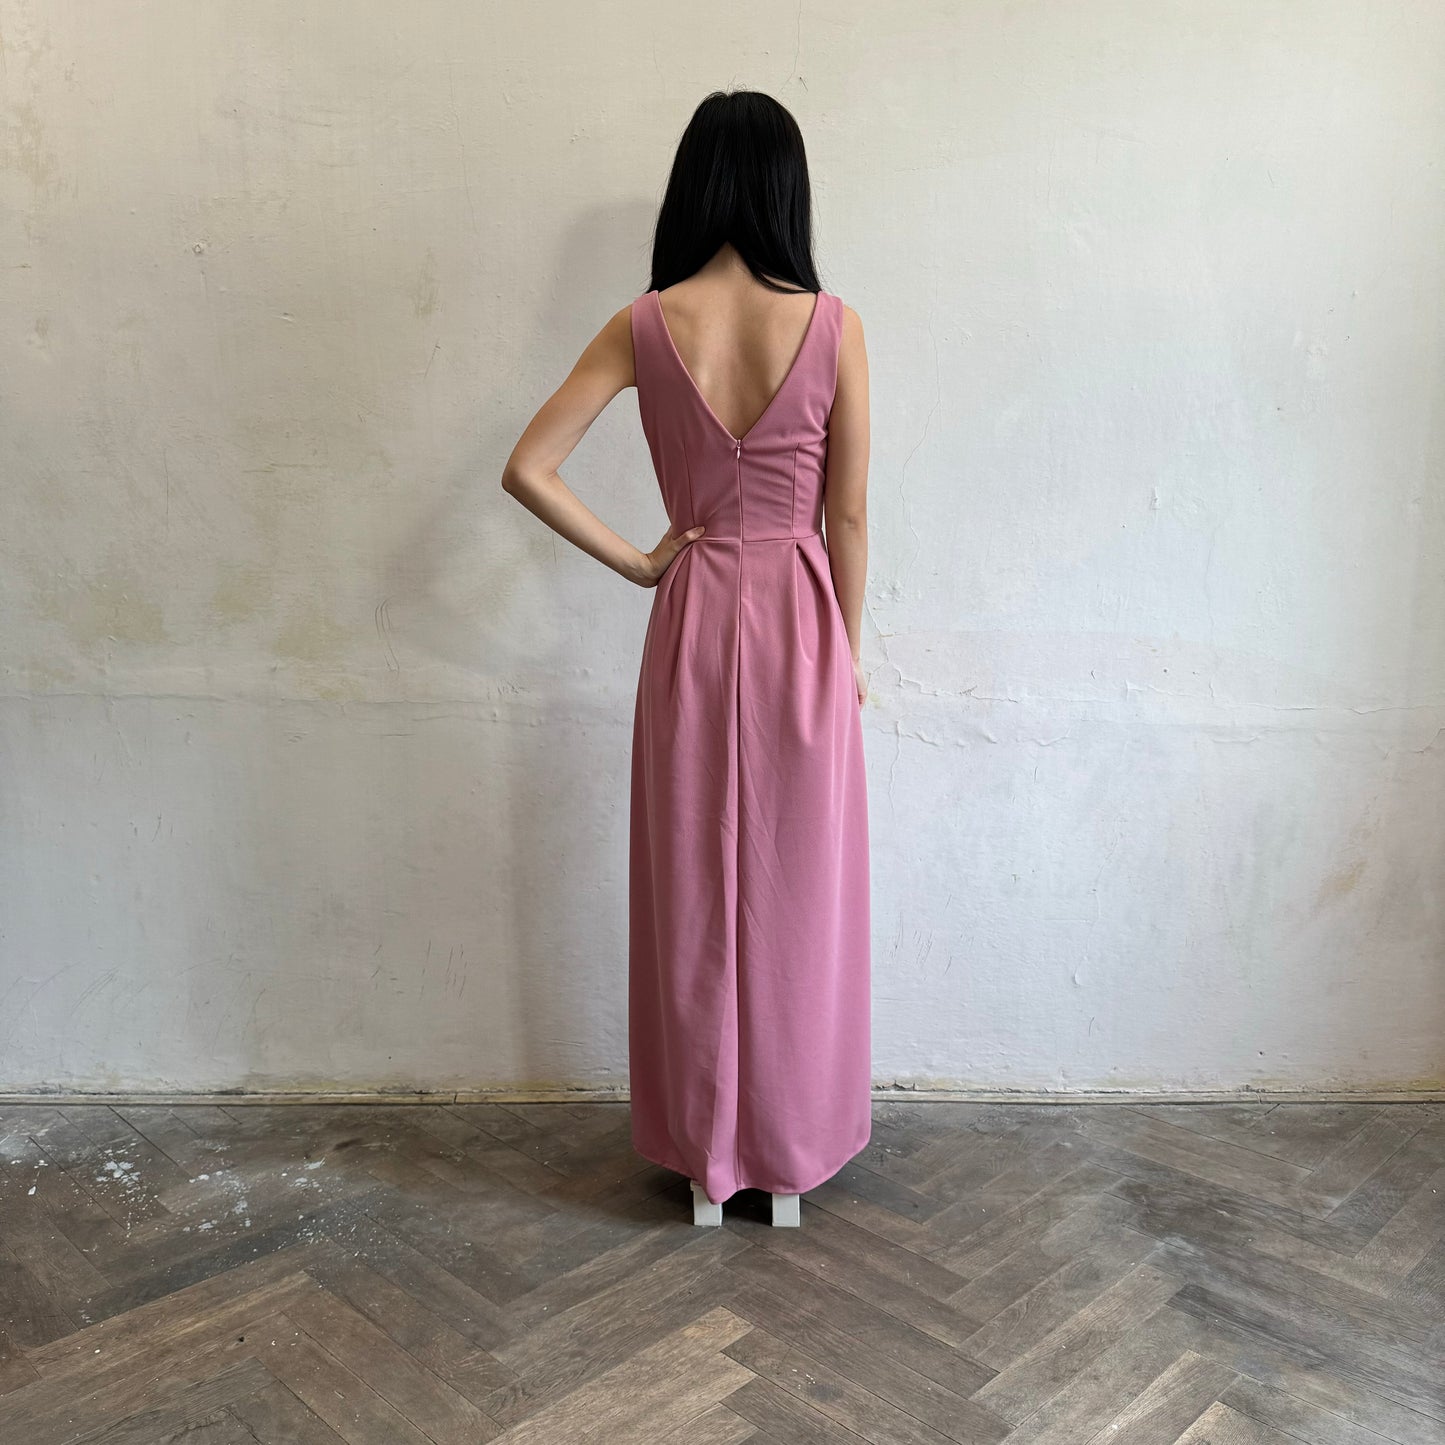 Modelka asijského původu pózující zezadu oblečená ve tmavě růžových společenských šatech s rozparkem